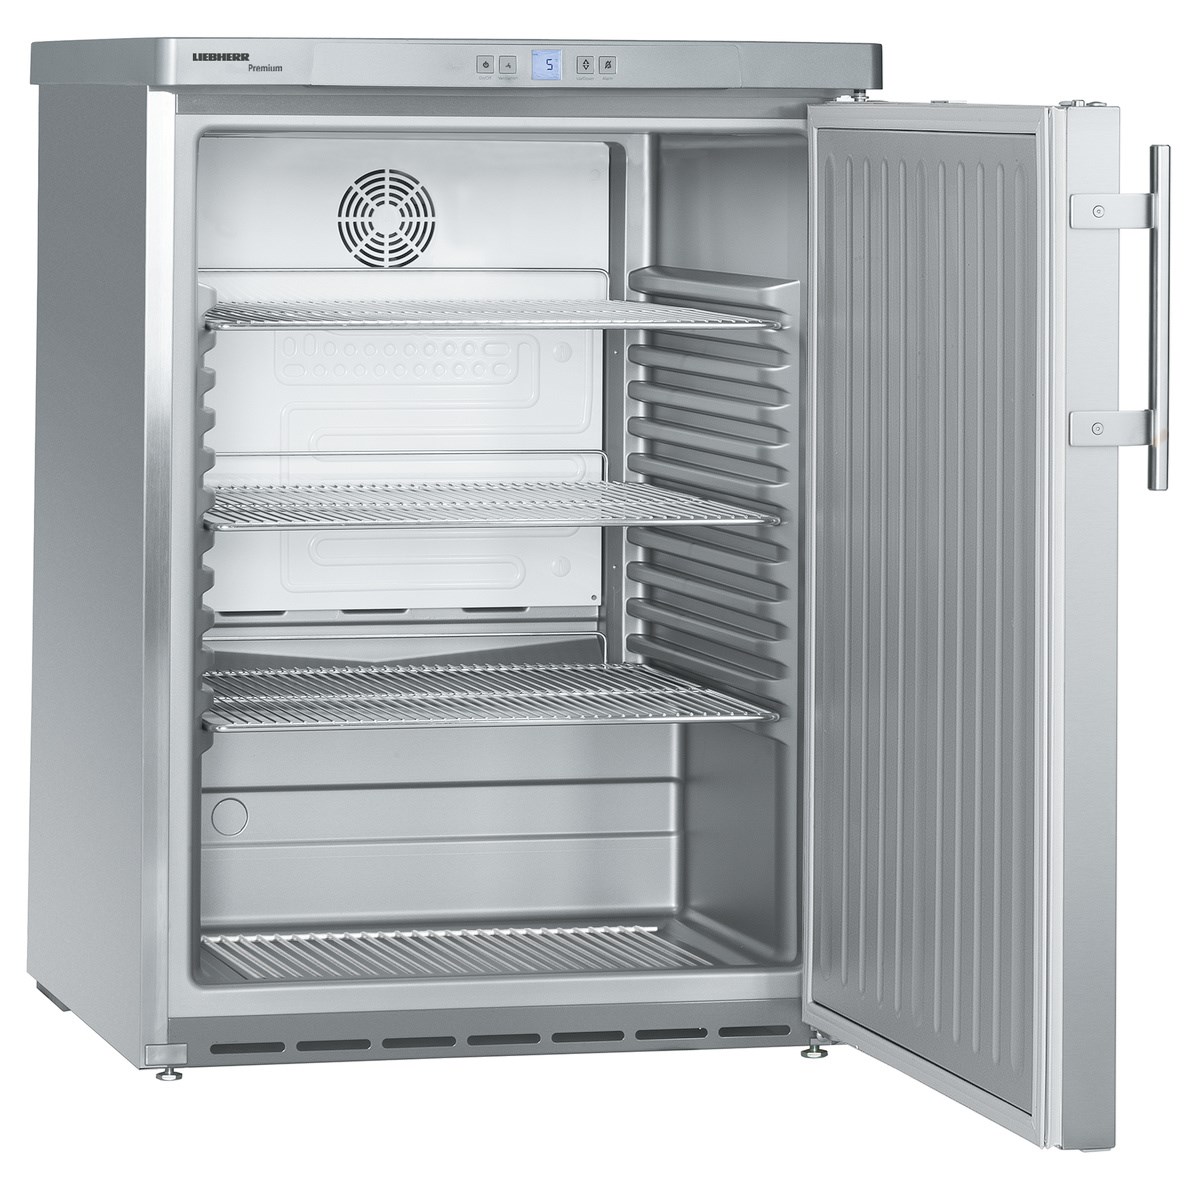 FKUv 1660 Premium Unterbaufähiges Kühlgerät mit Umluftkühlung